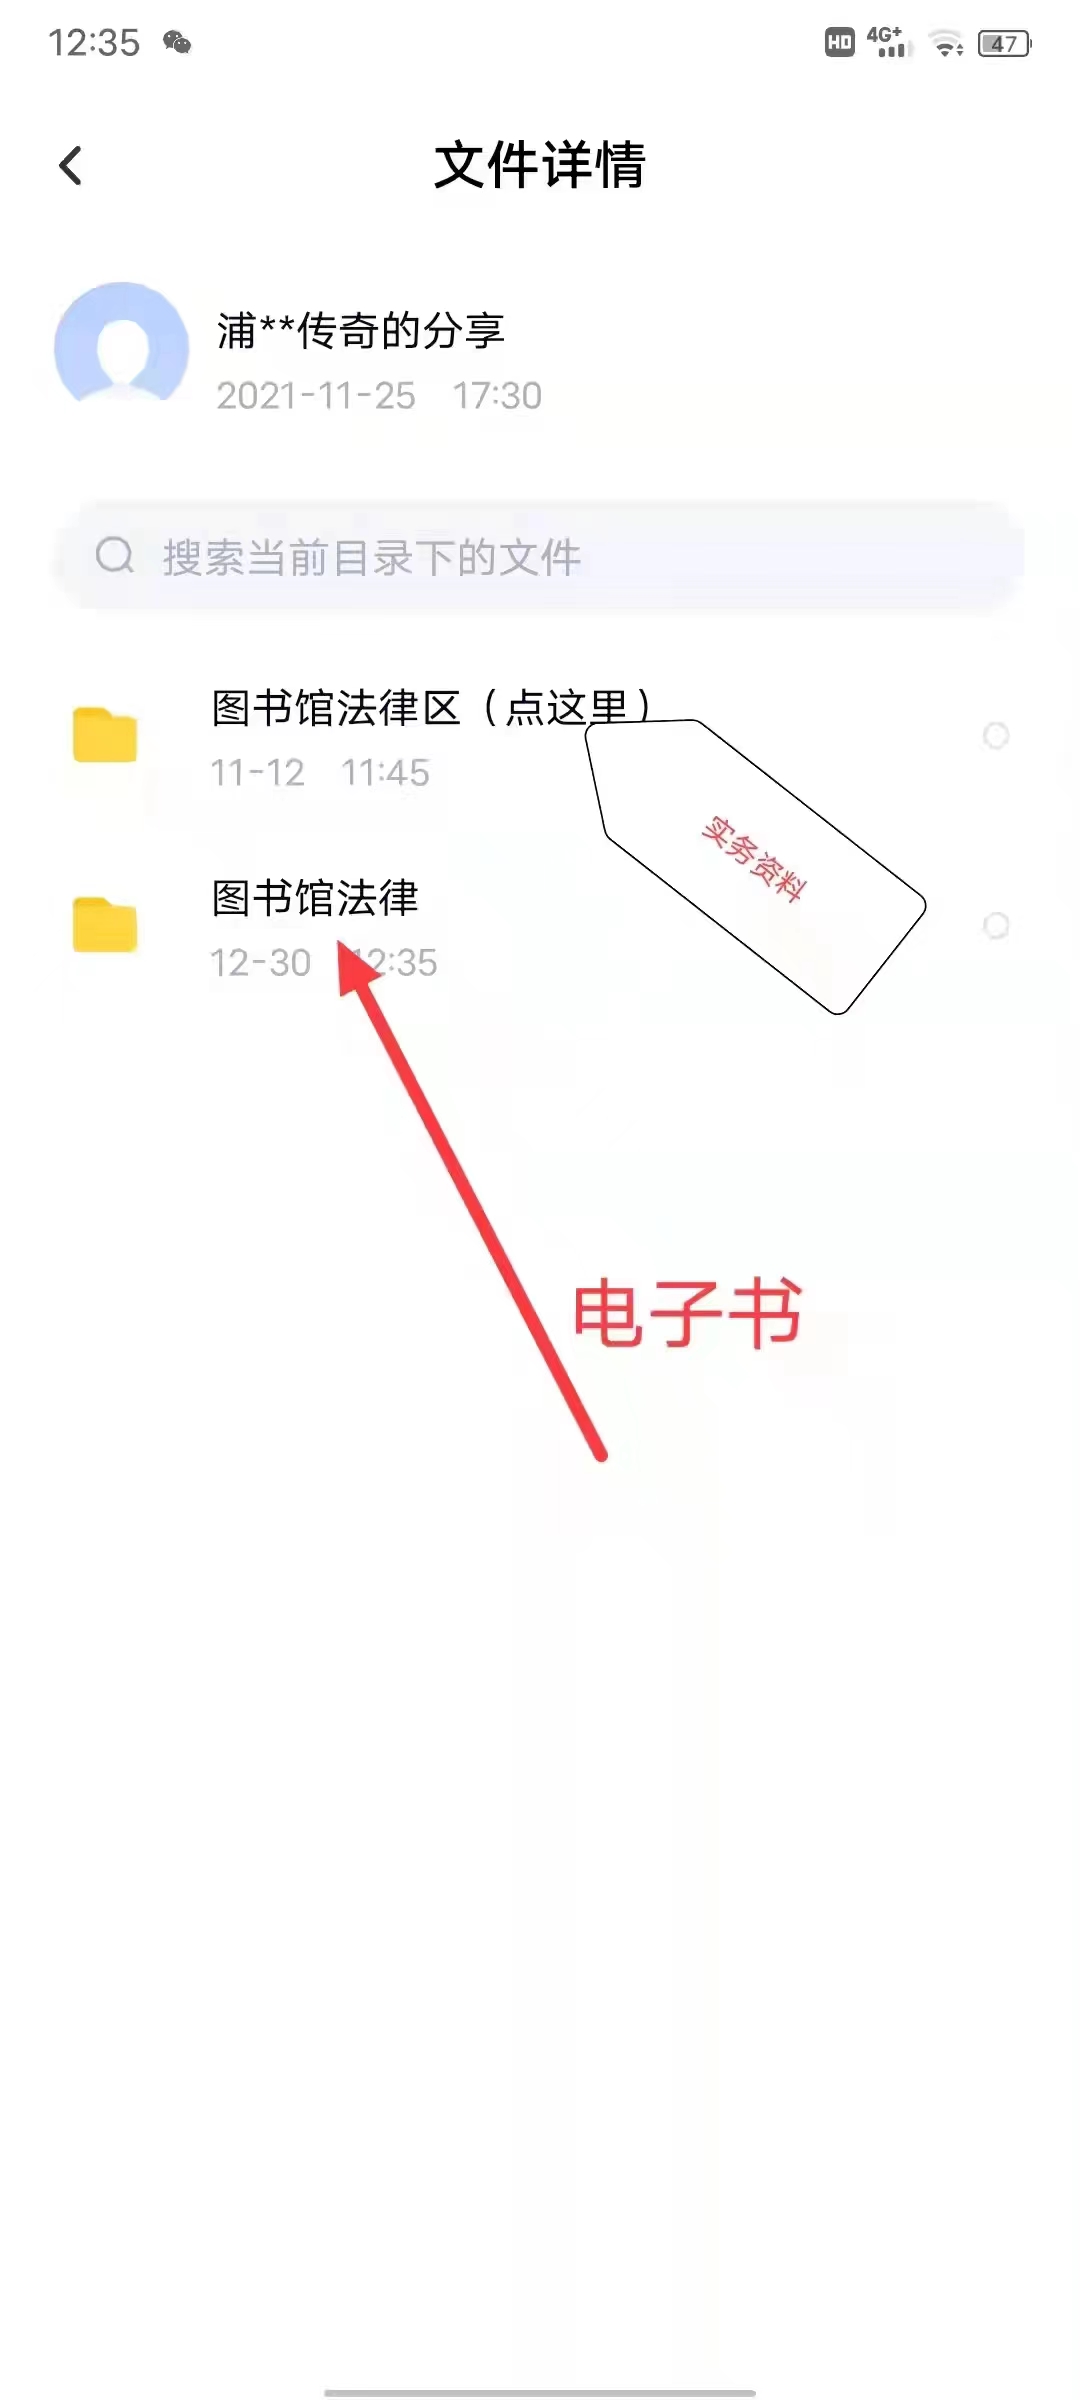 【法律】【PDF】349 中国税法教程 202208 董玉明，樊雪茫